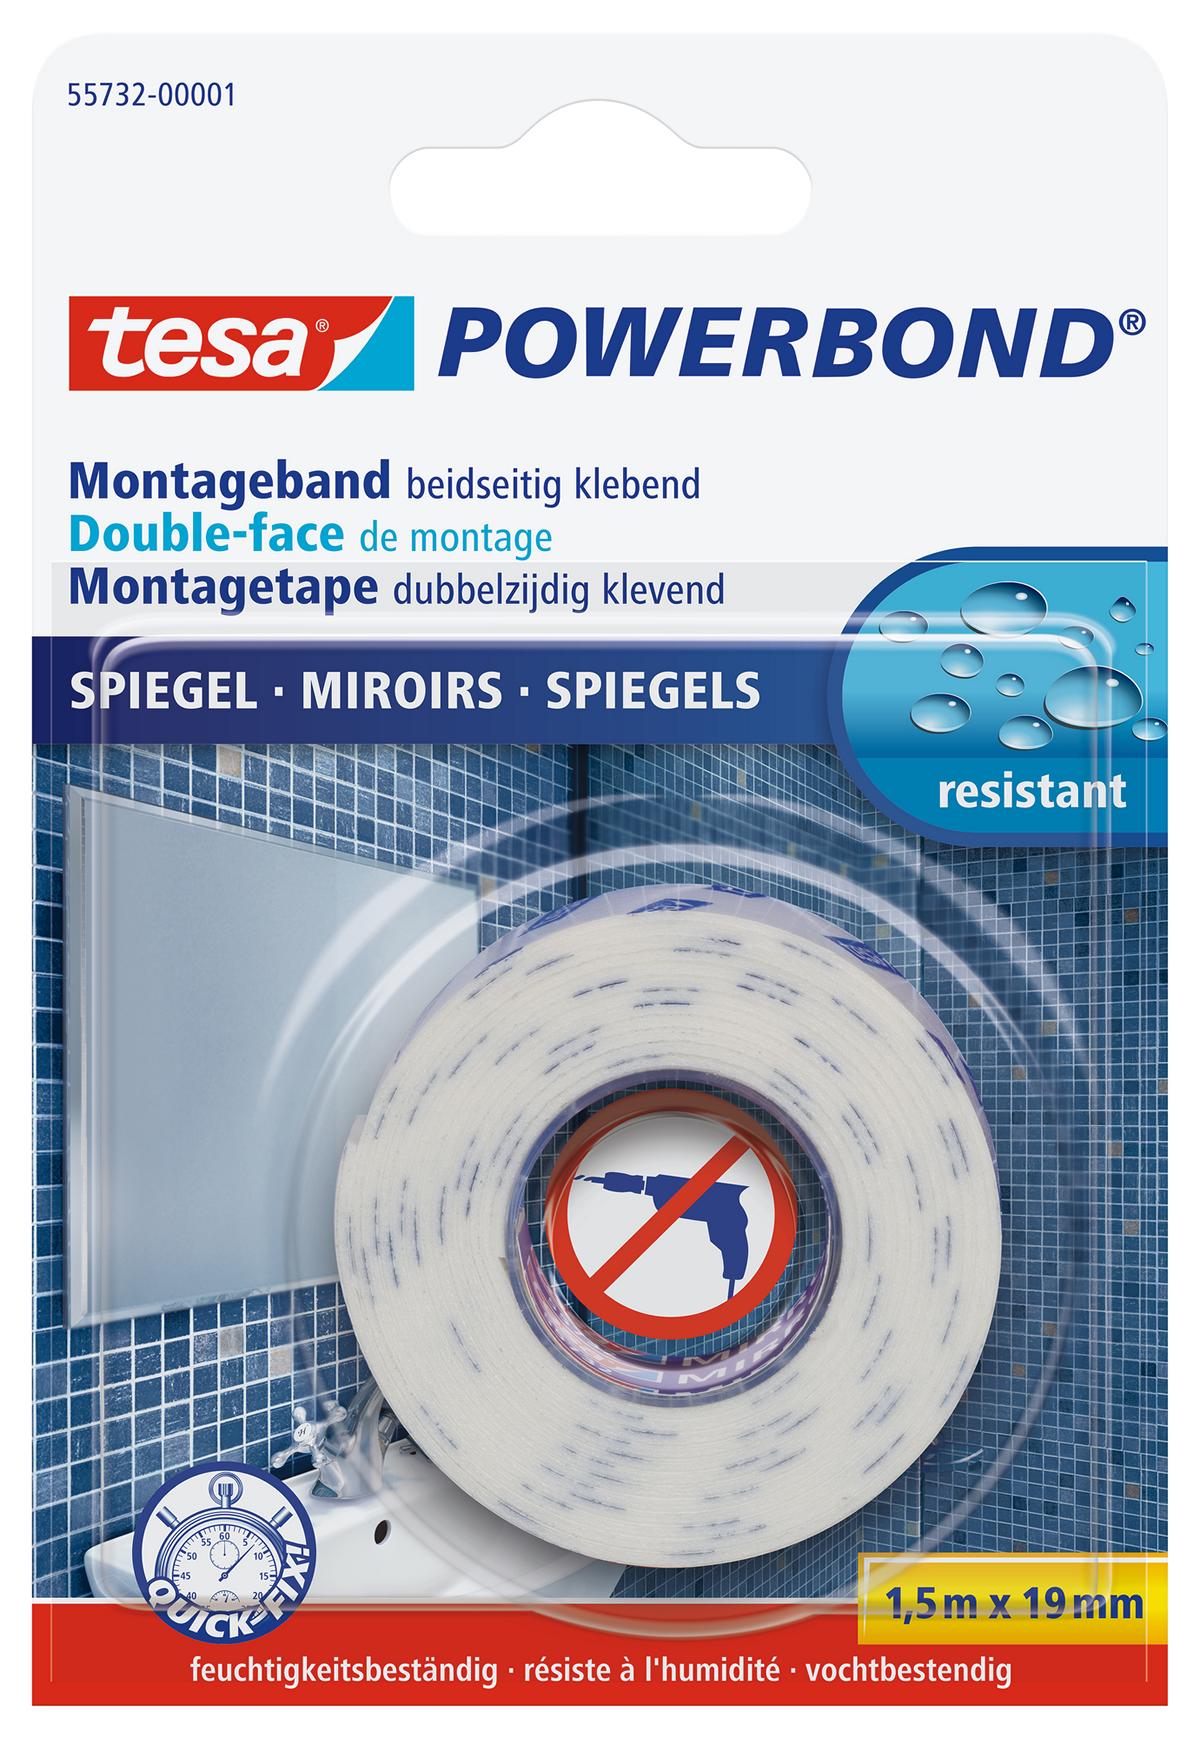 tesa Powerbond Montageband Spiegel, 1,5 m